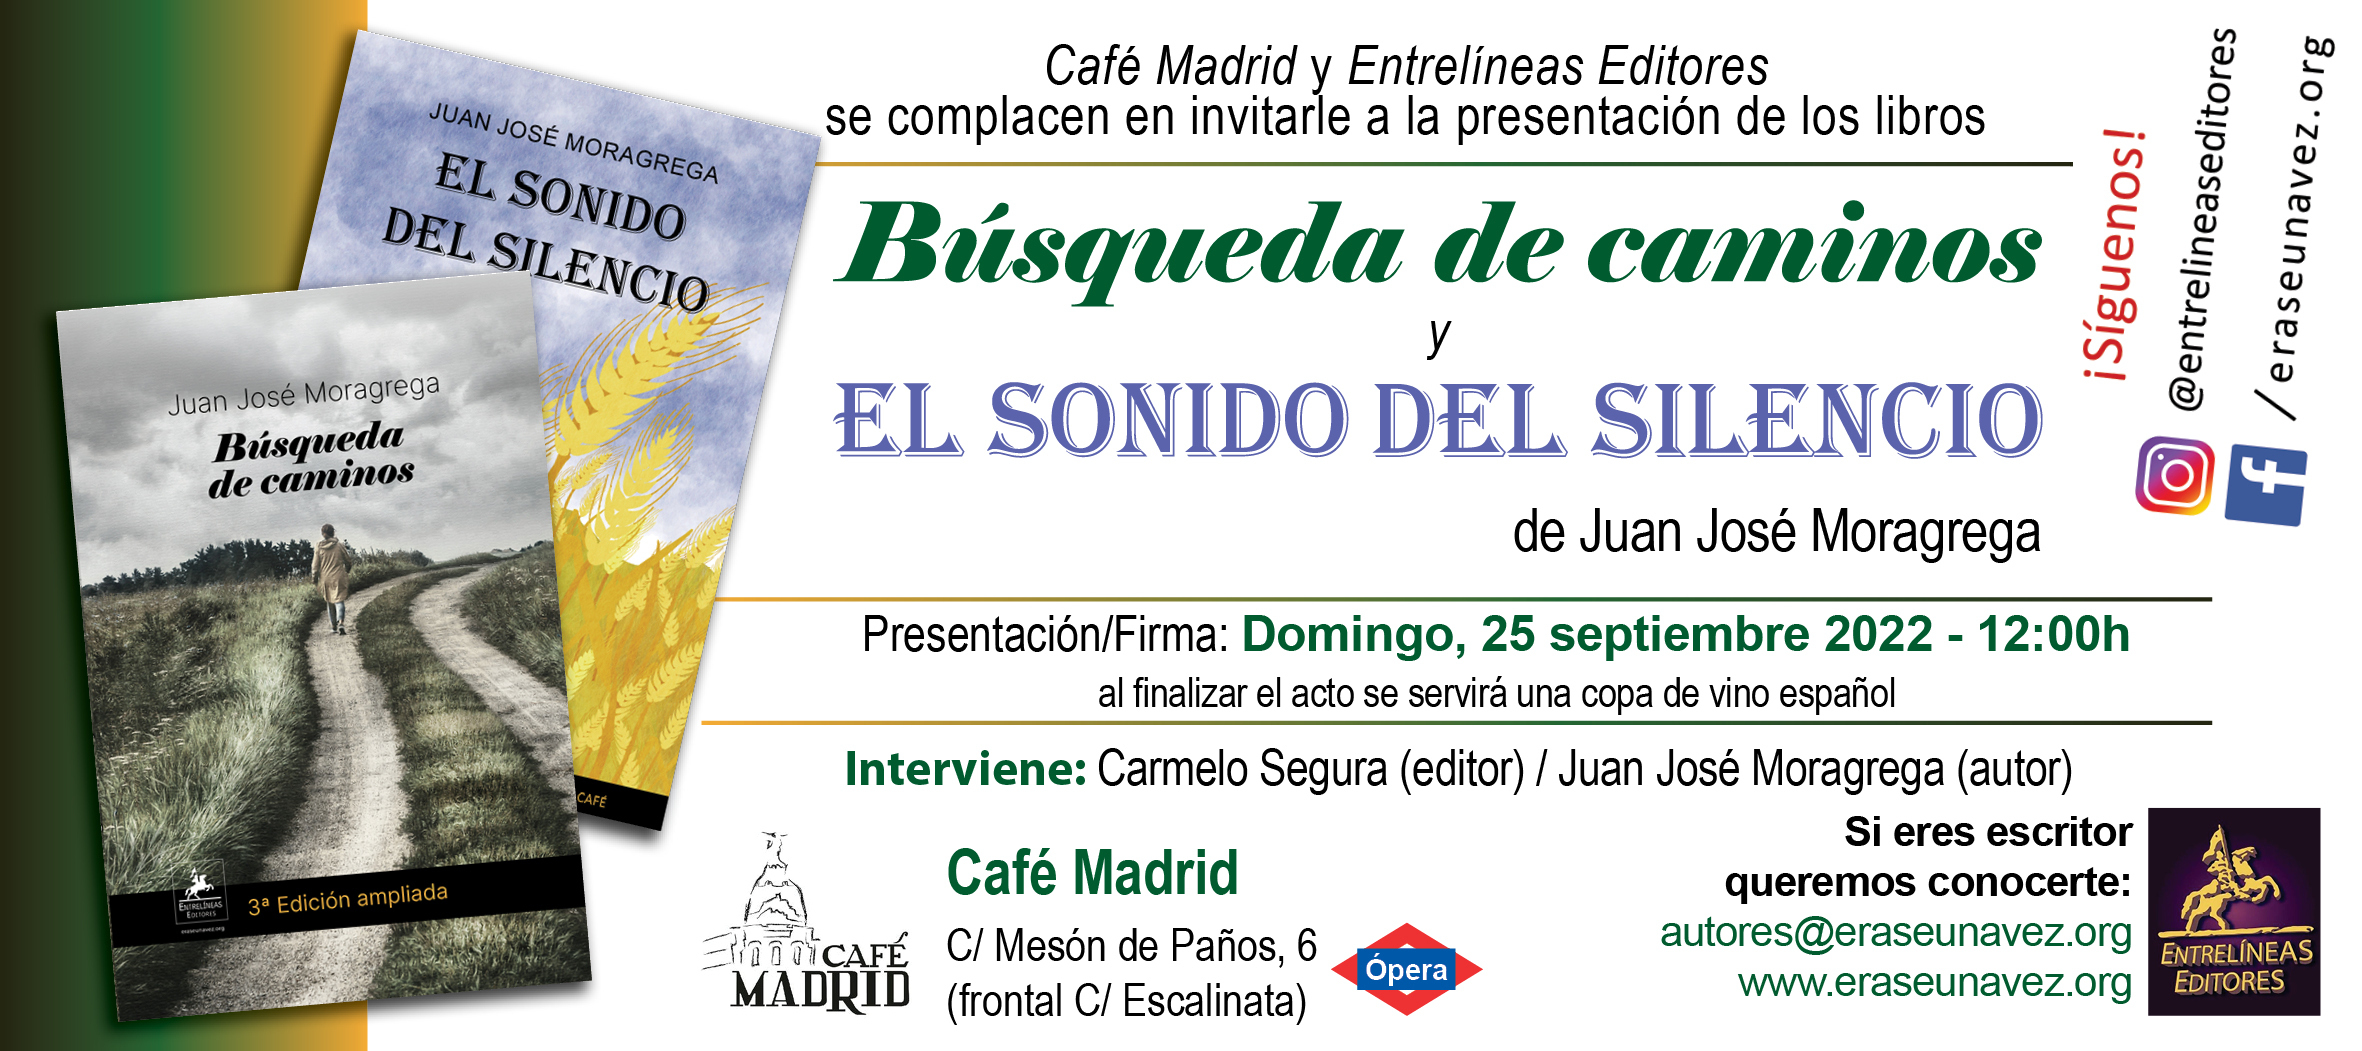 2022-09-25_Busqueda_de_caminos_-_invitacion